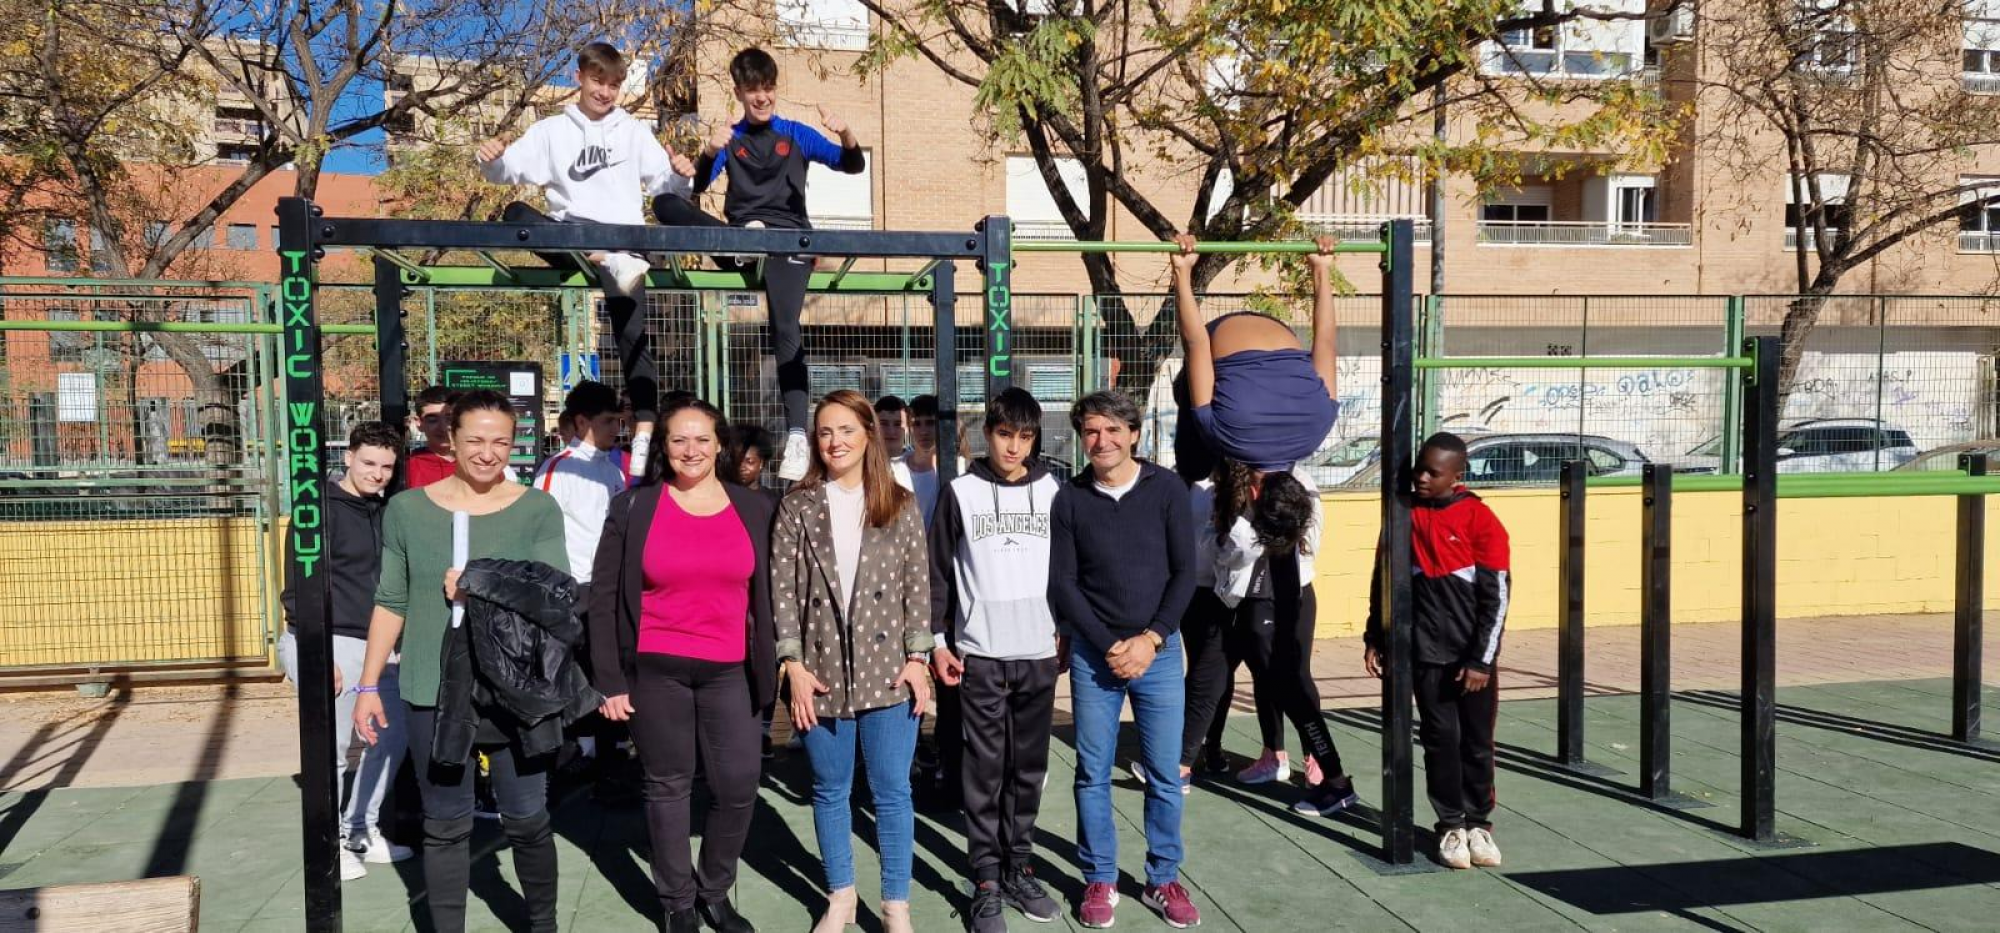 La Concejalía de Deportes instala una estación de calistenia y habilita una pista de petanca junto al IES 'Ramón Arcas' para uso escolar y de los vecinos y vecinas de la zona